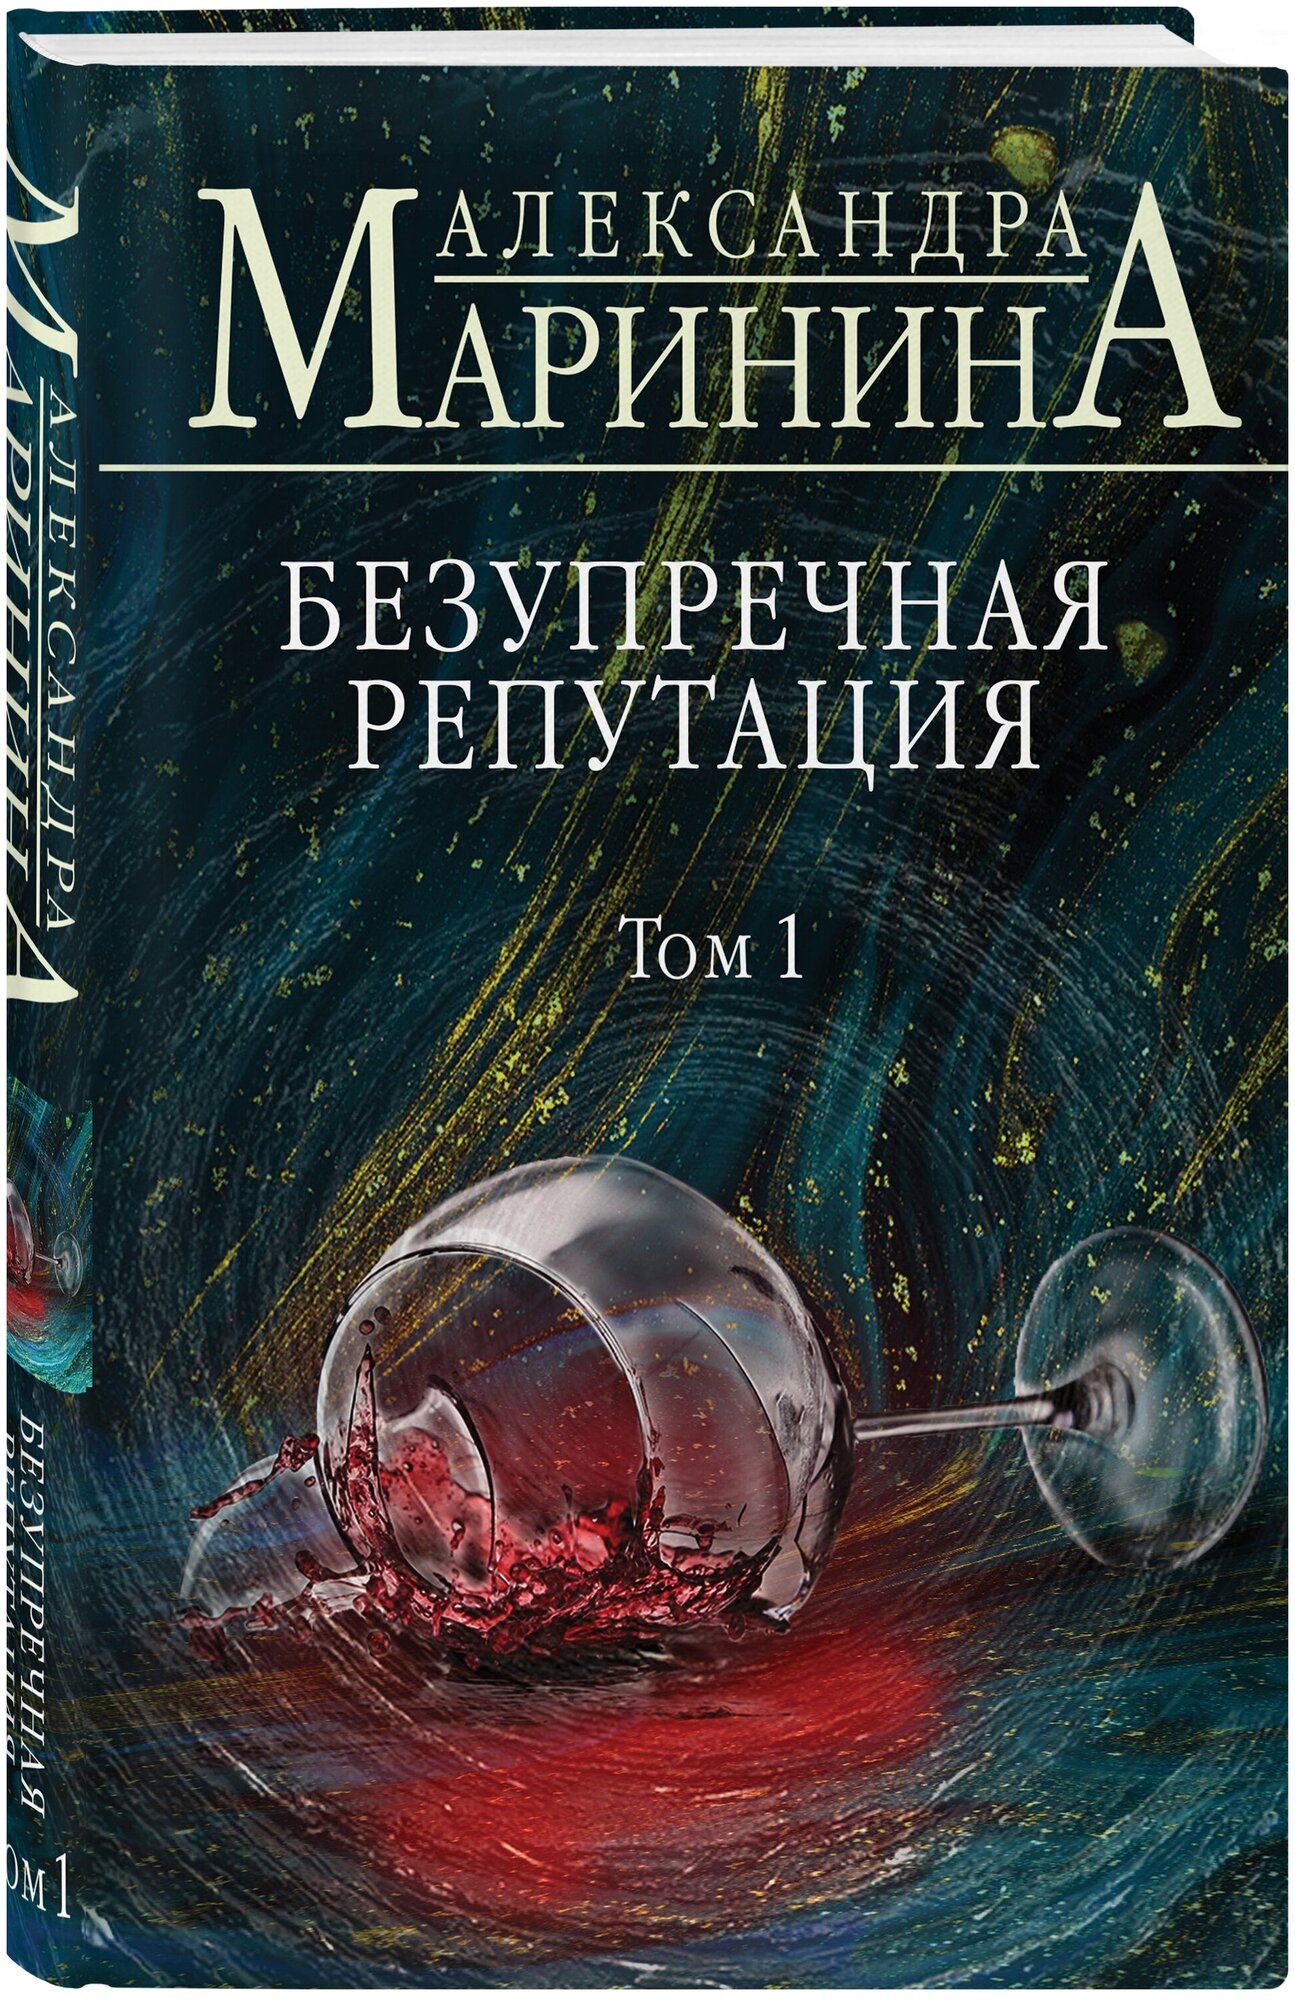 Безупречная репутация Том 1 Книга Маринина Александра 16+